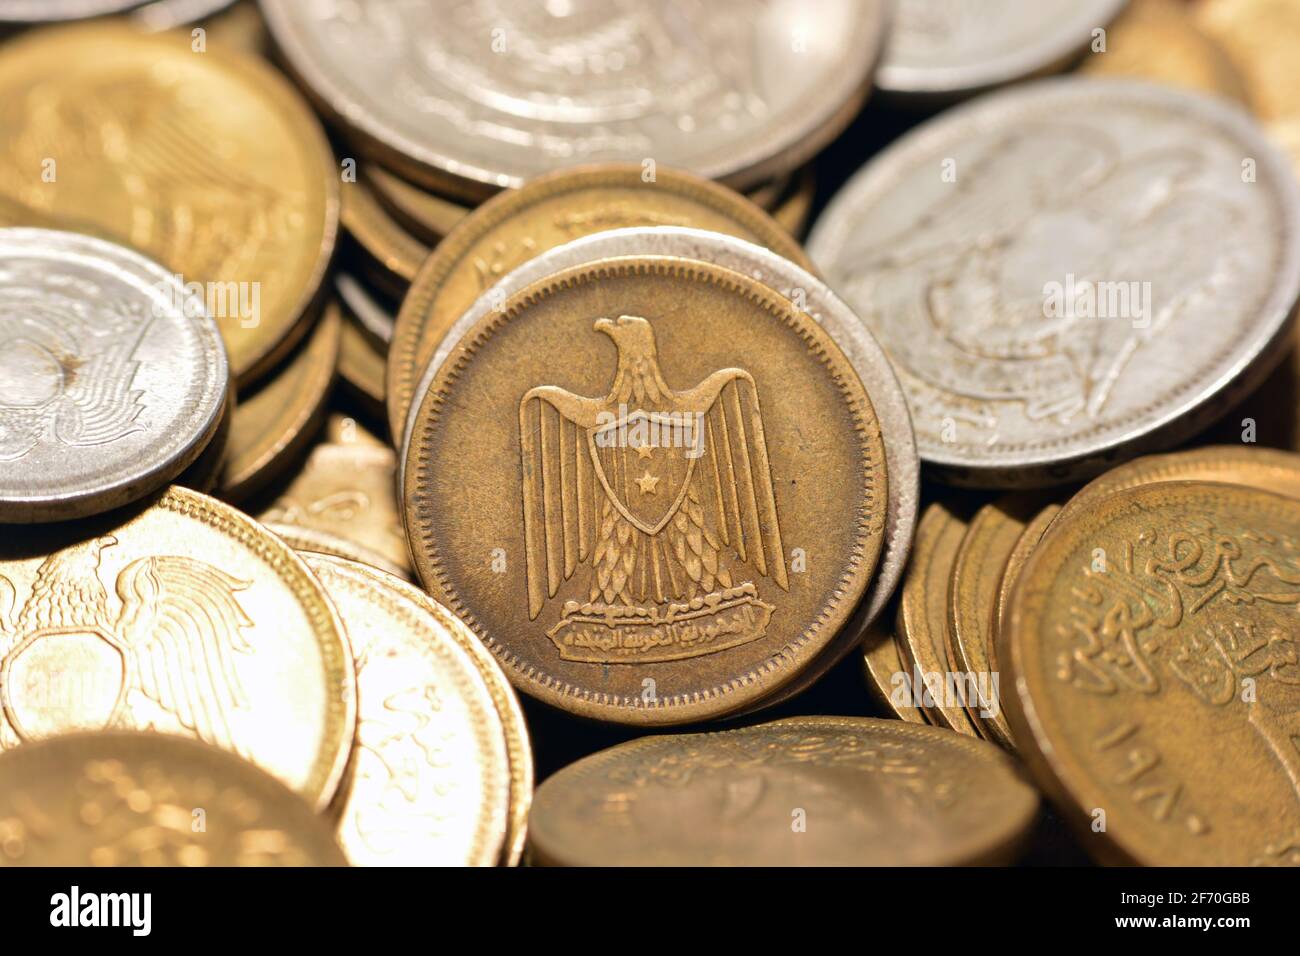 Cinco milliemes moneda 1960, antiguo dinero egipcio de 5 milliemes moneda la moneda de la República Árabe Unida de Egipto y Siria, vintage retro Foto de stock